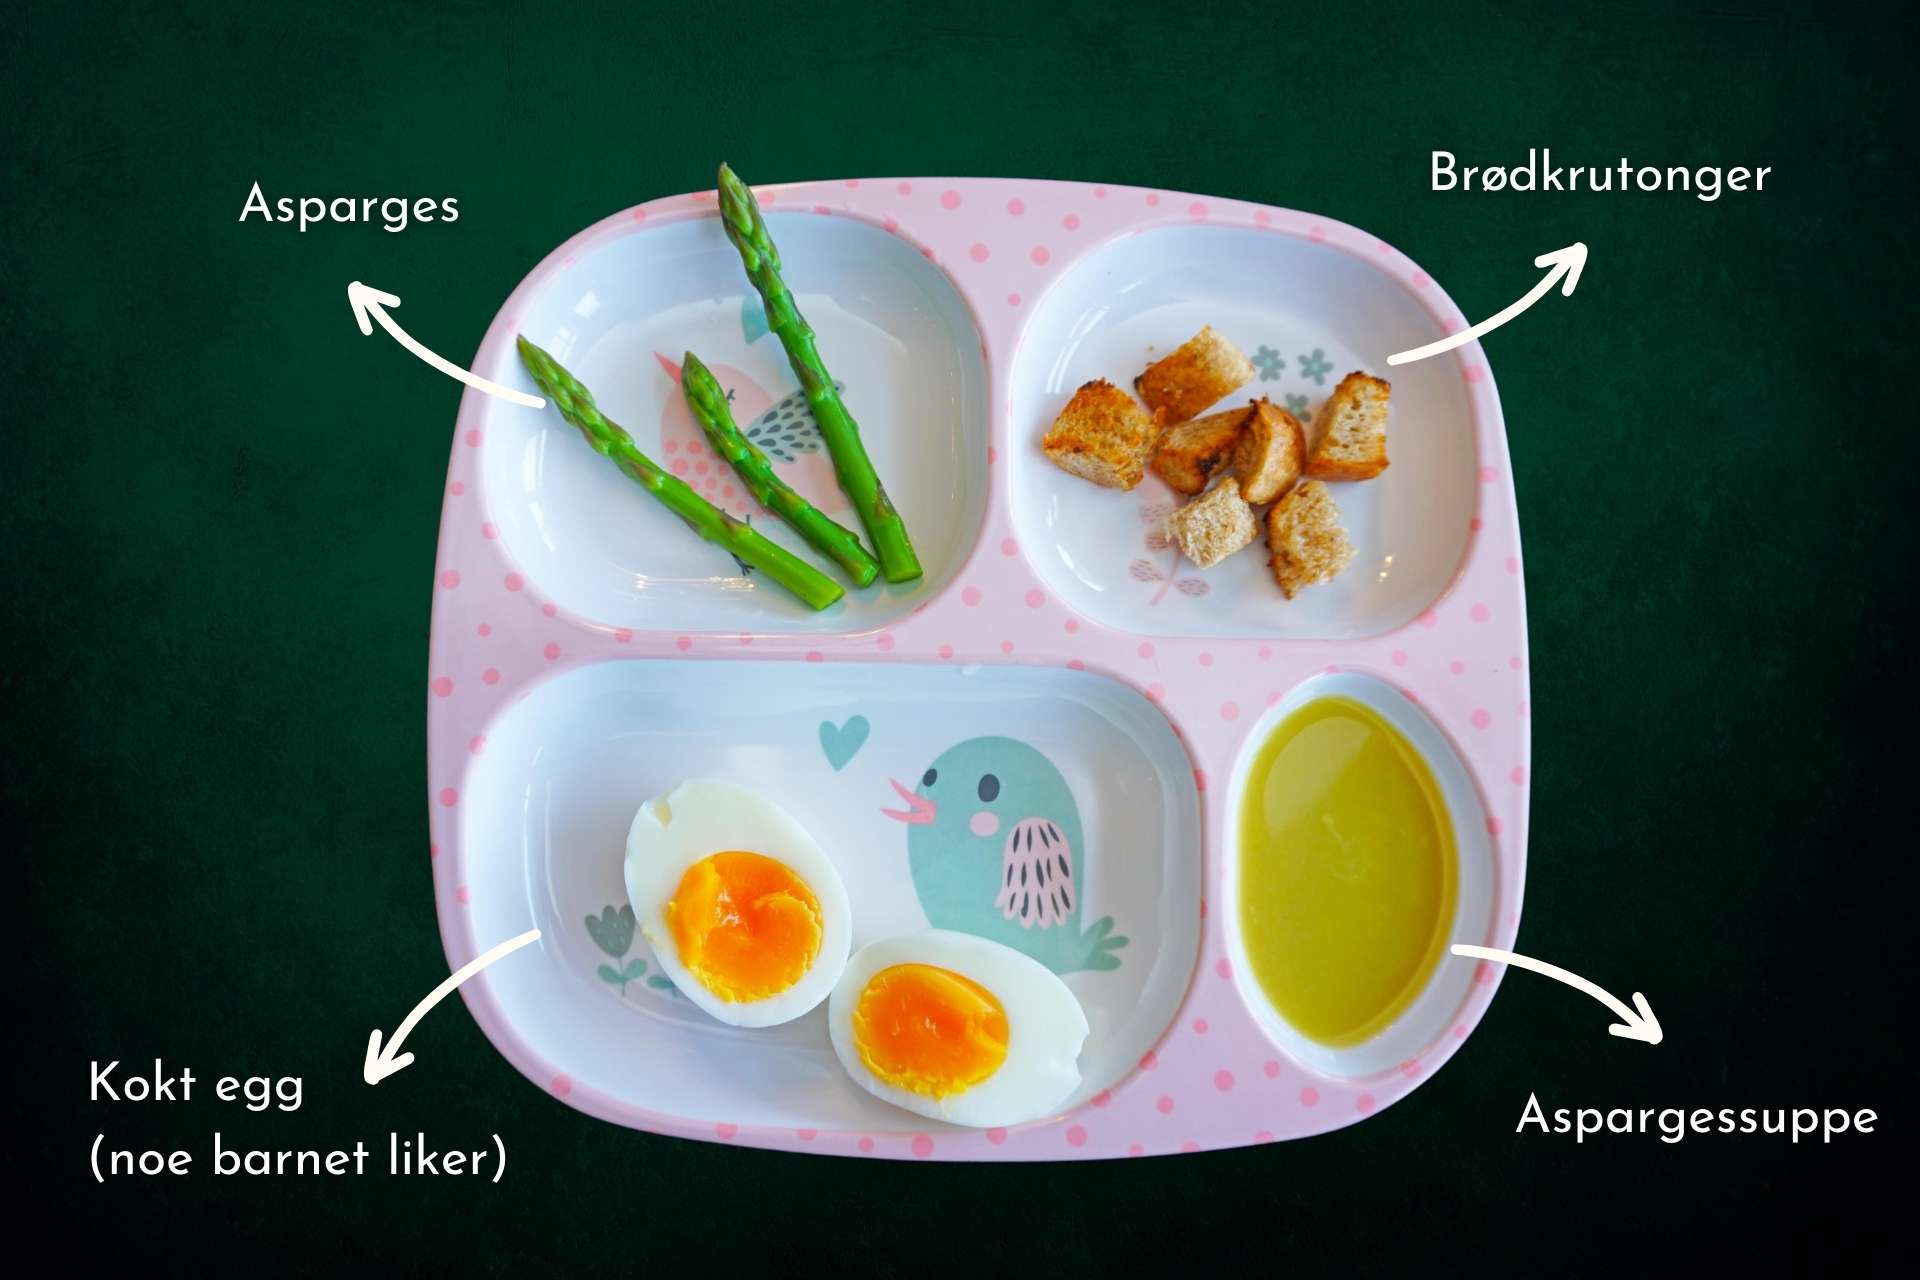 Barnevennlig Aspargessuppe med kokt egg og brødkrutonger